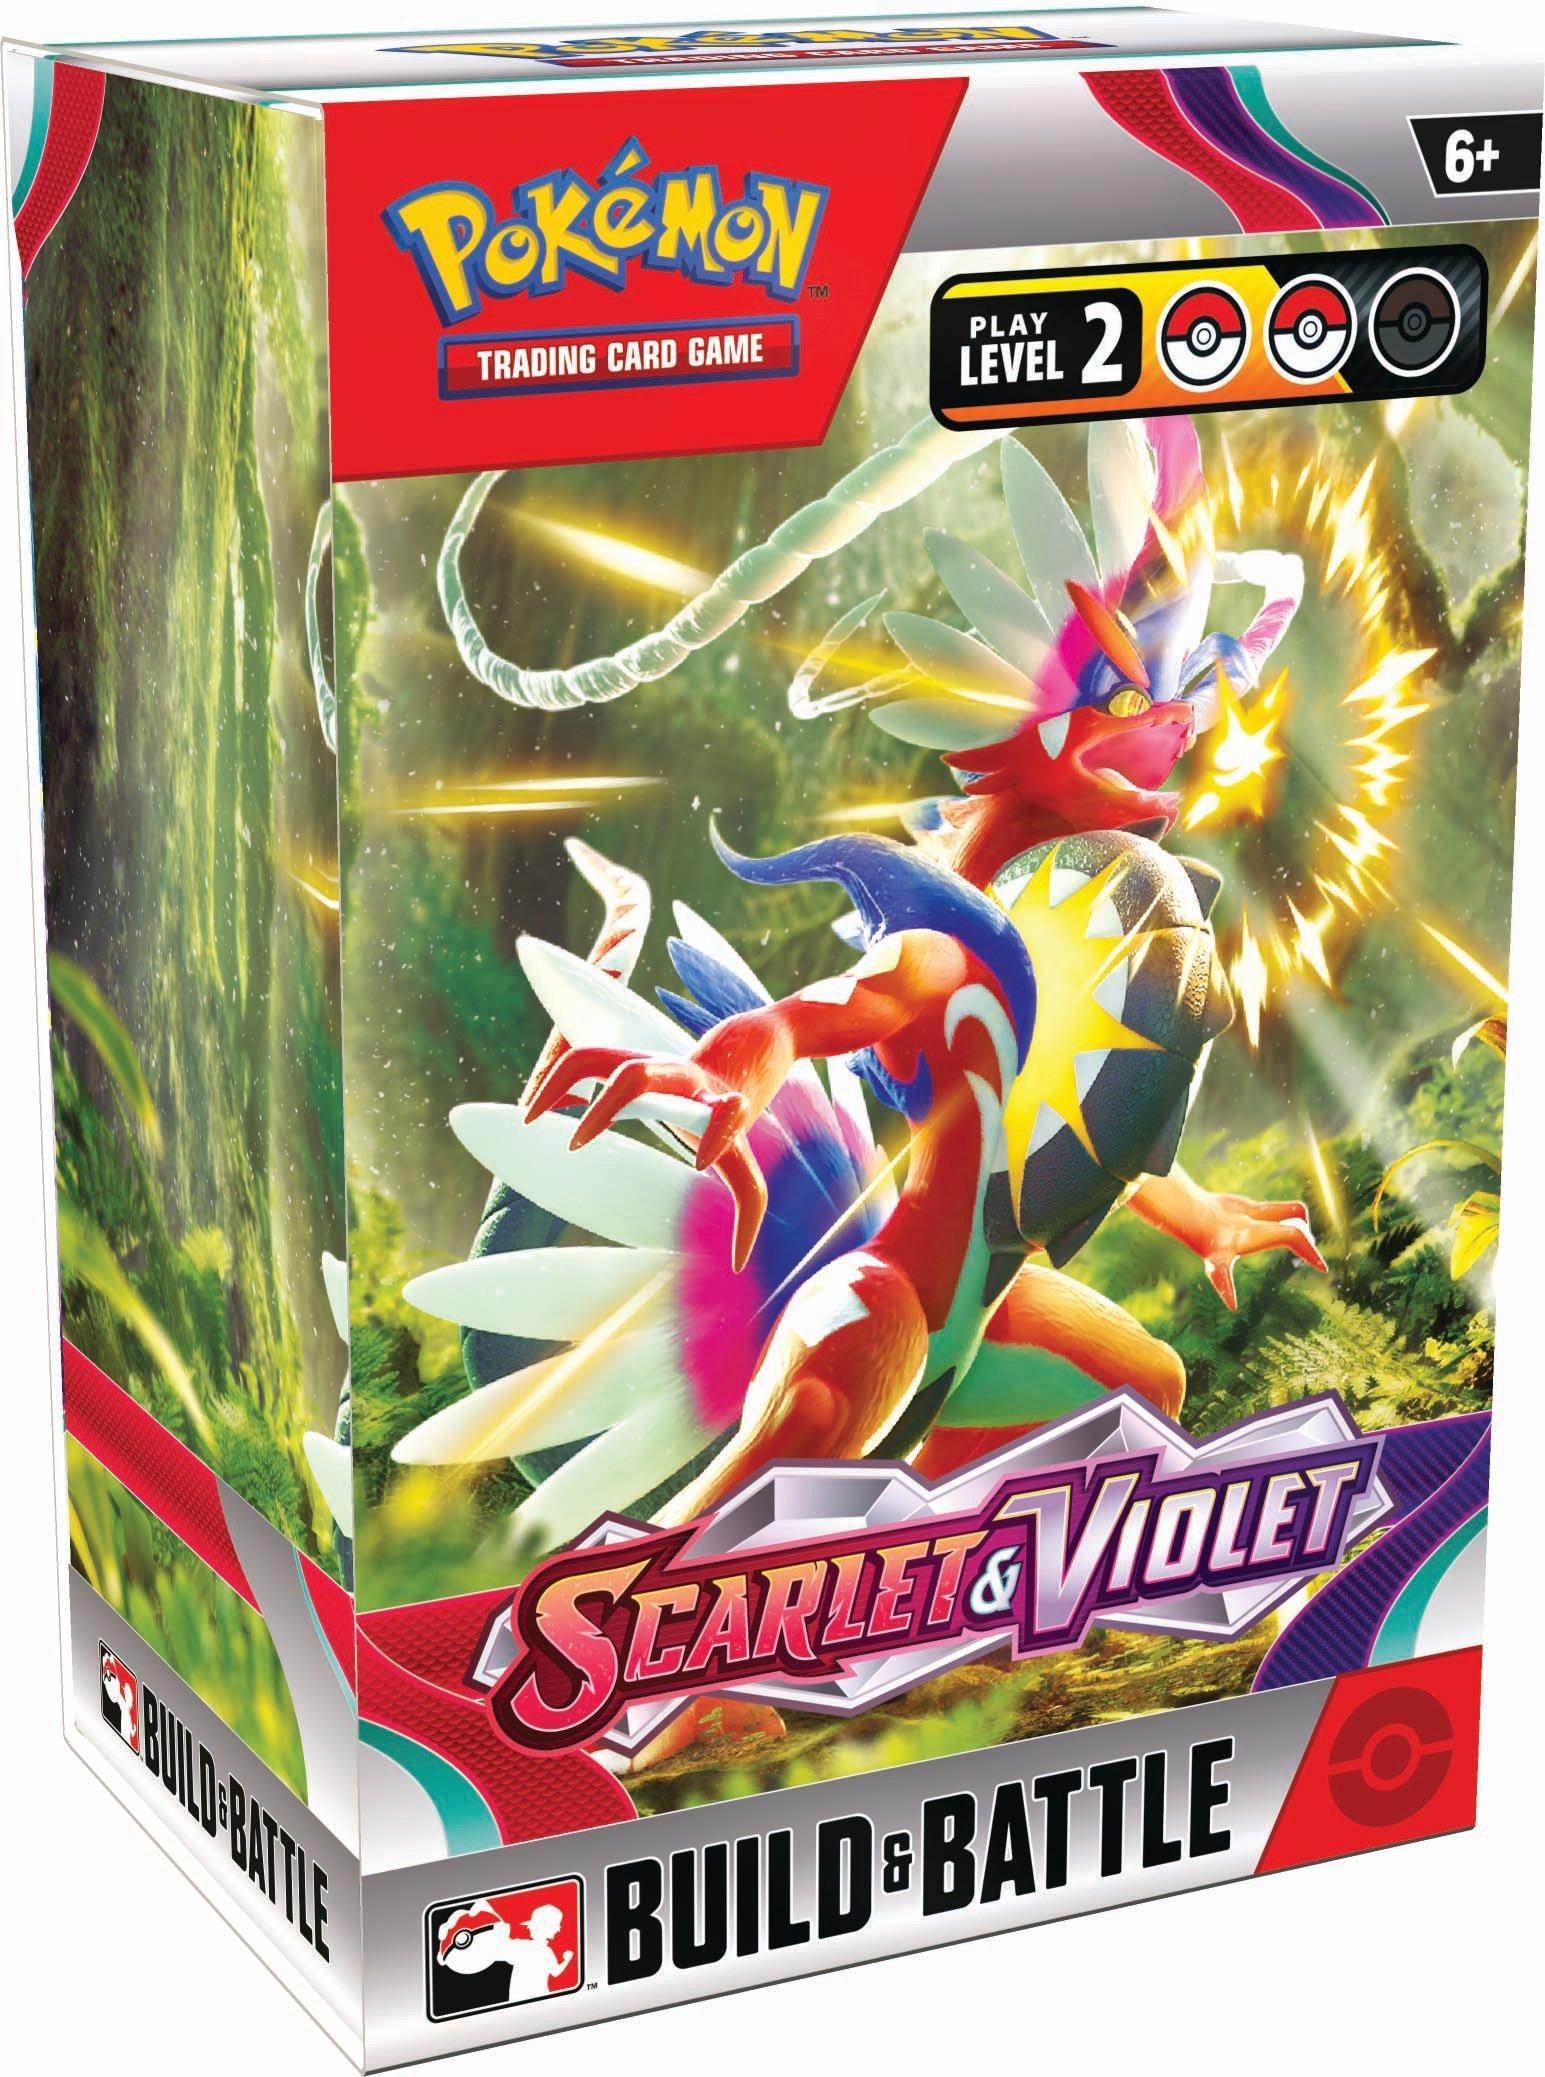 Pokemon Trading Card Game Scarlet & Violet Build & Battle